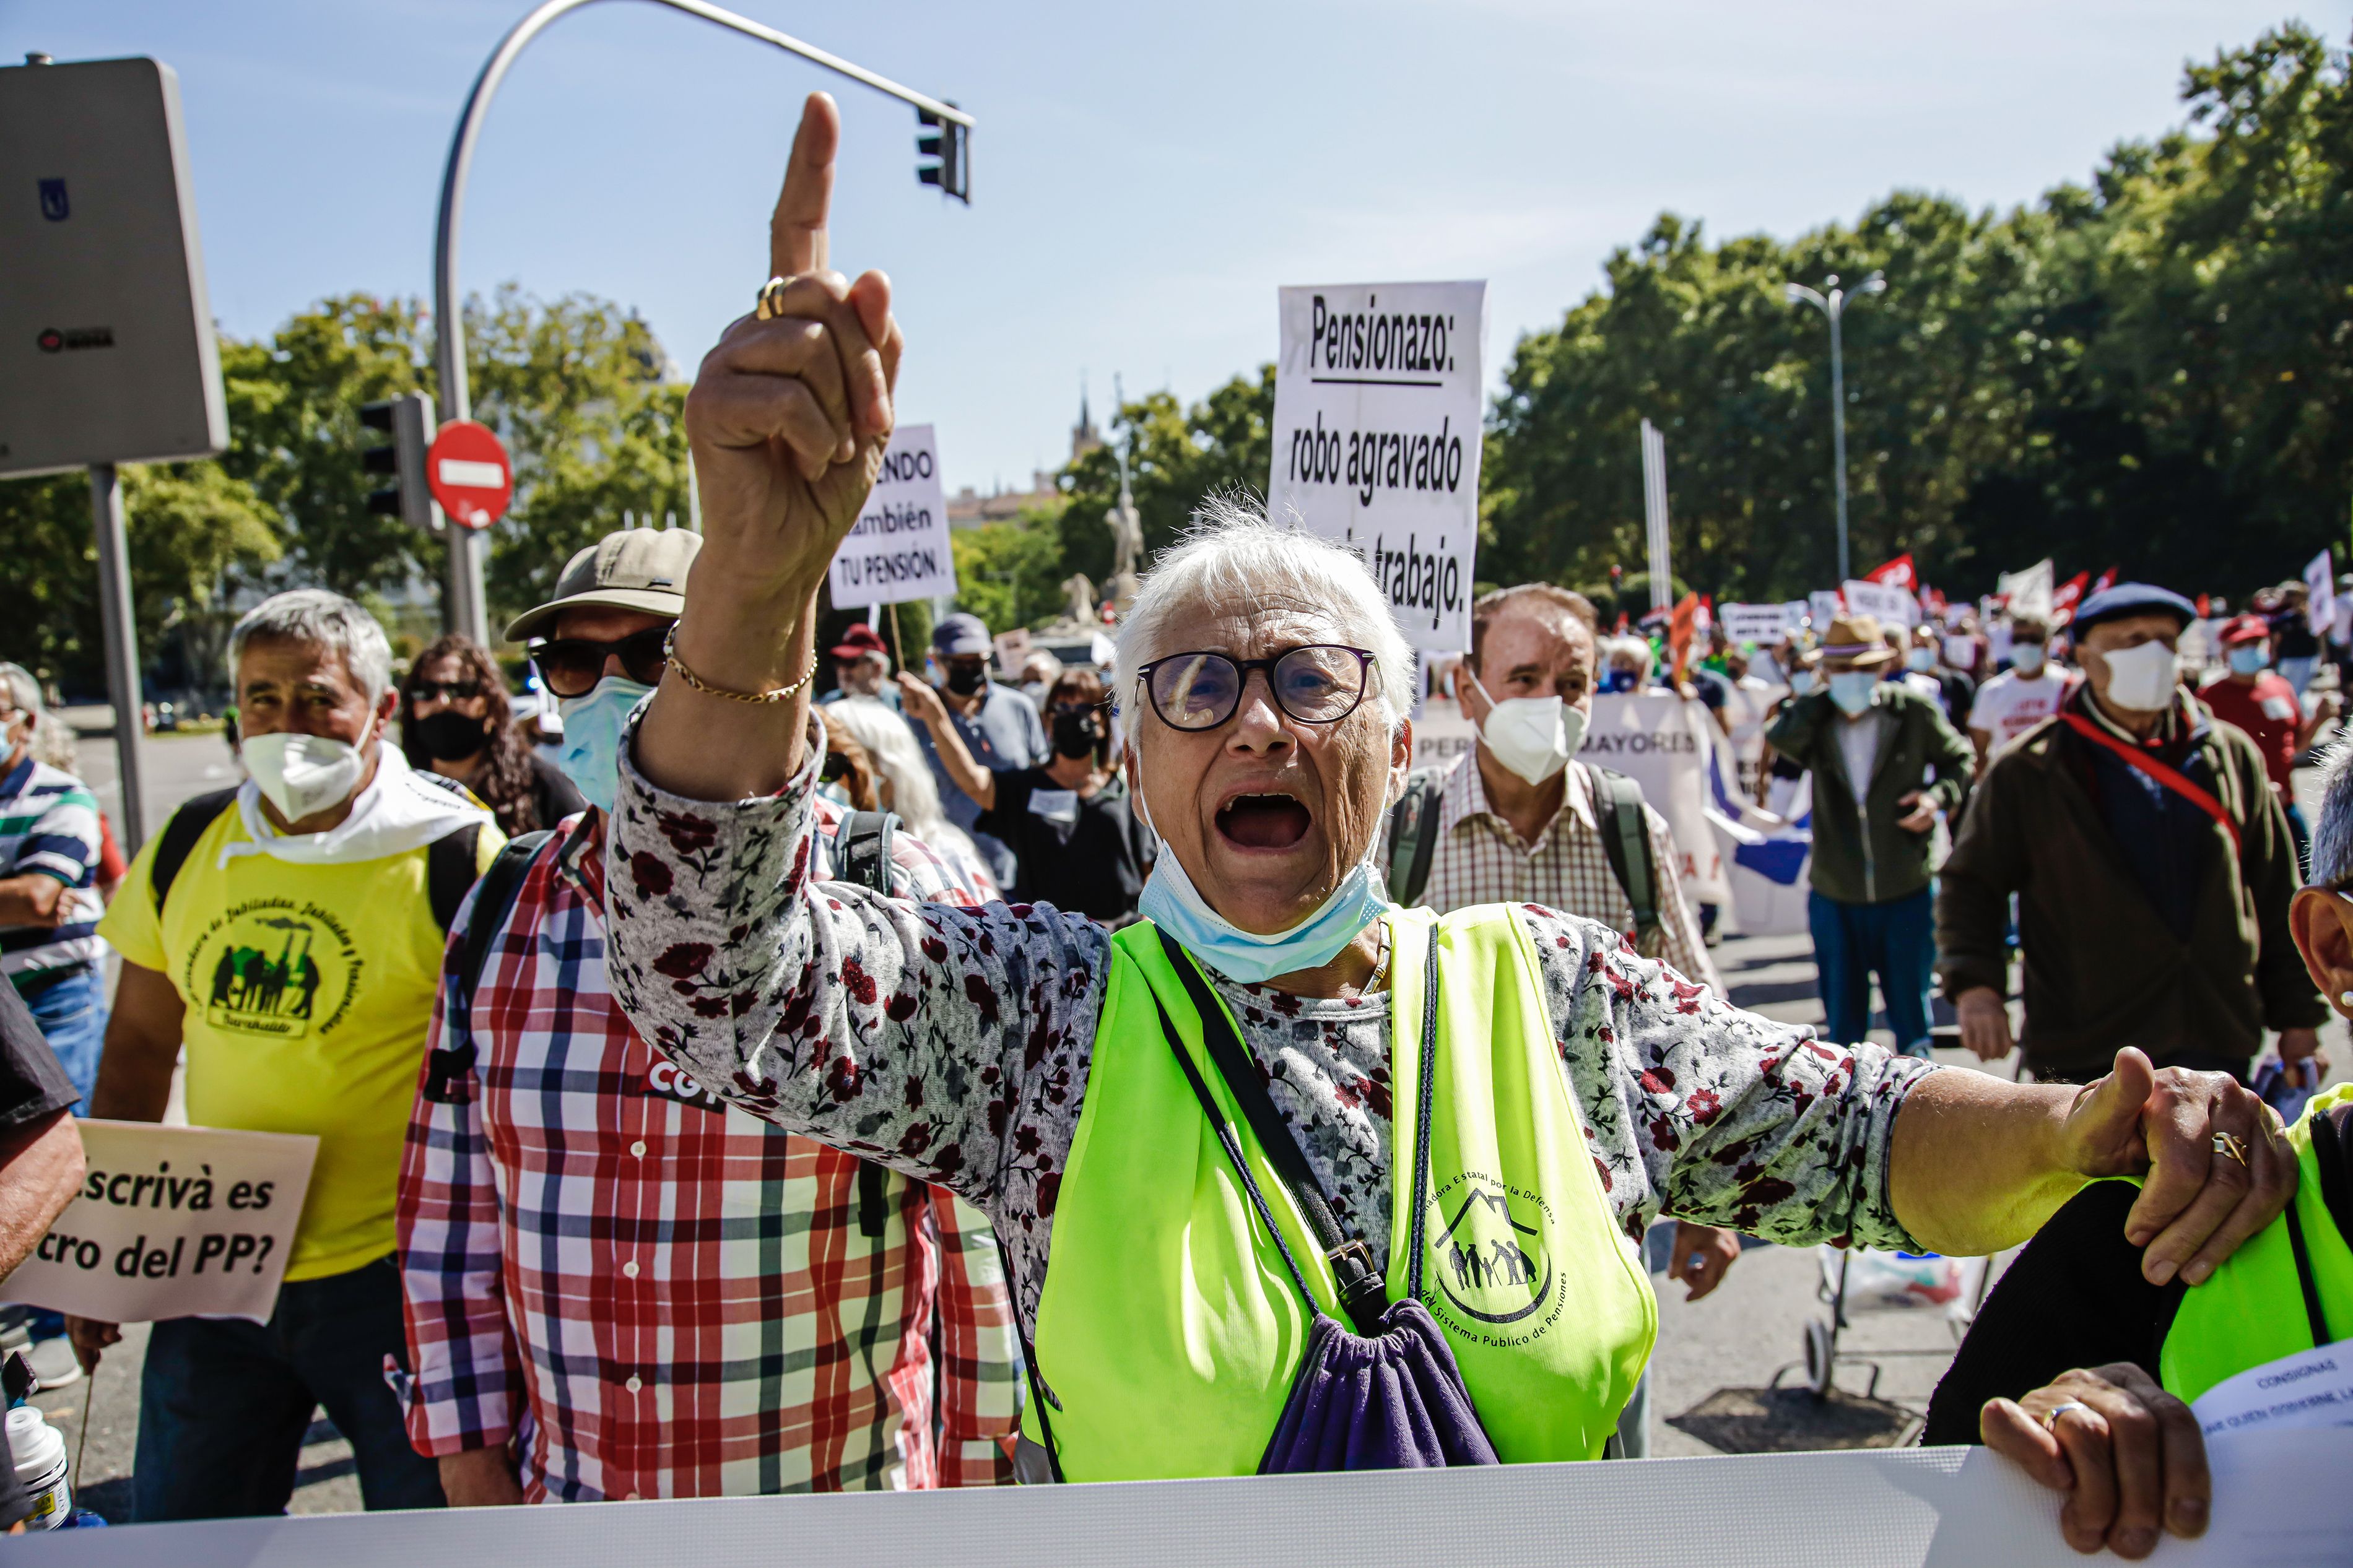 Los pensionistas vuelven a la calle: "No podemos permitir que nos arrebaten el Estado de Bienestar"